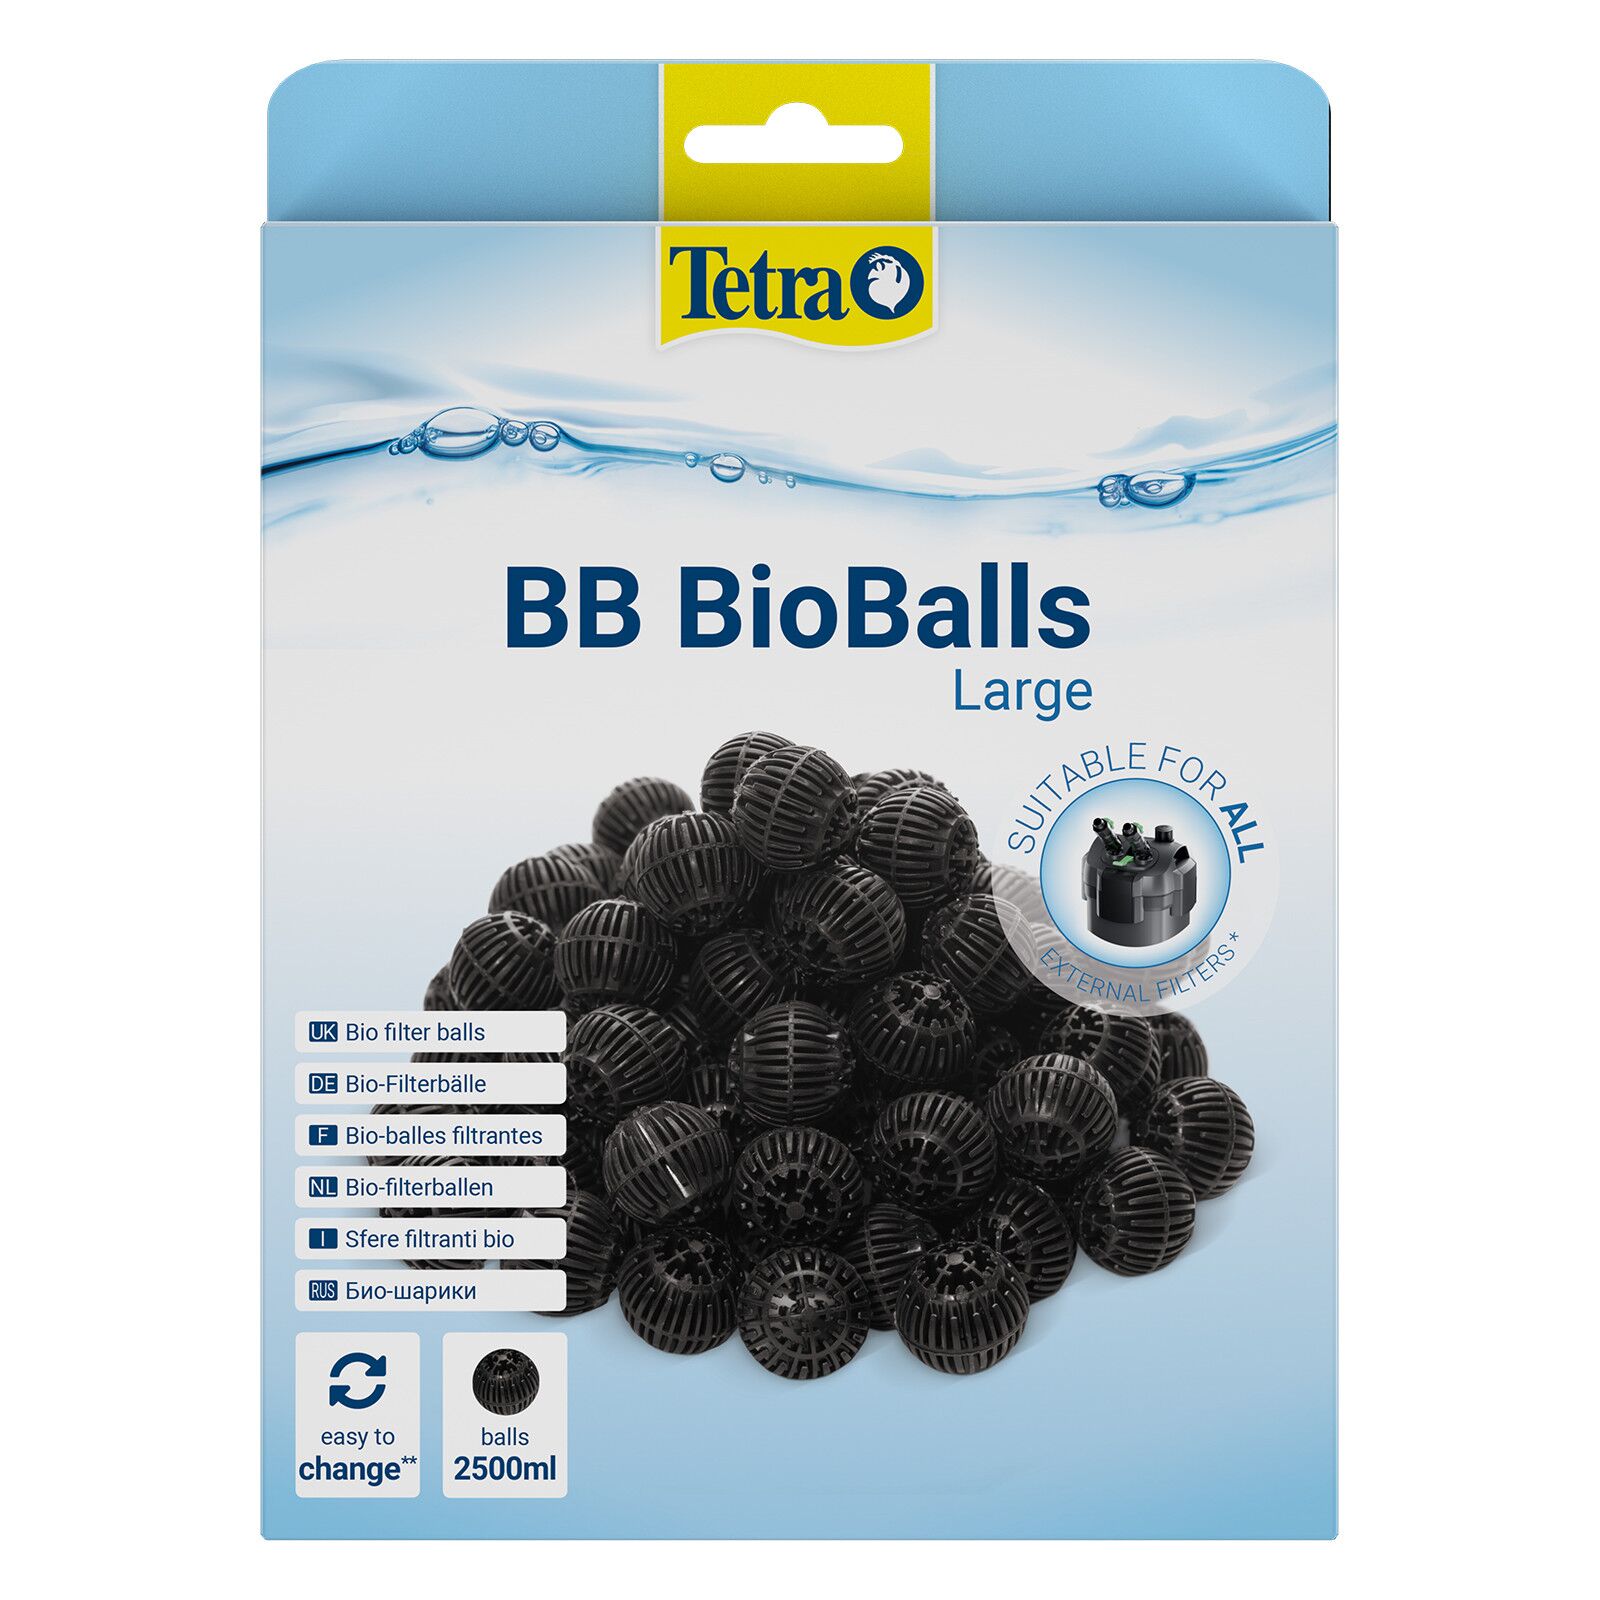 Tetra - BB BioBalls